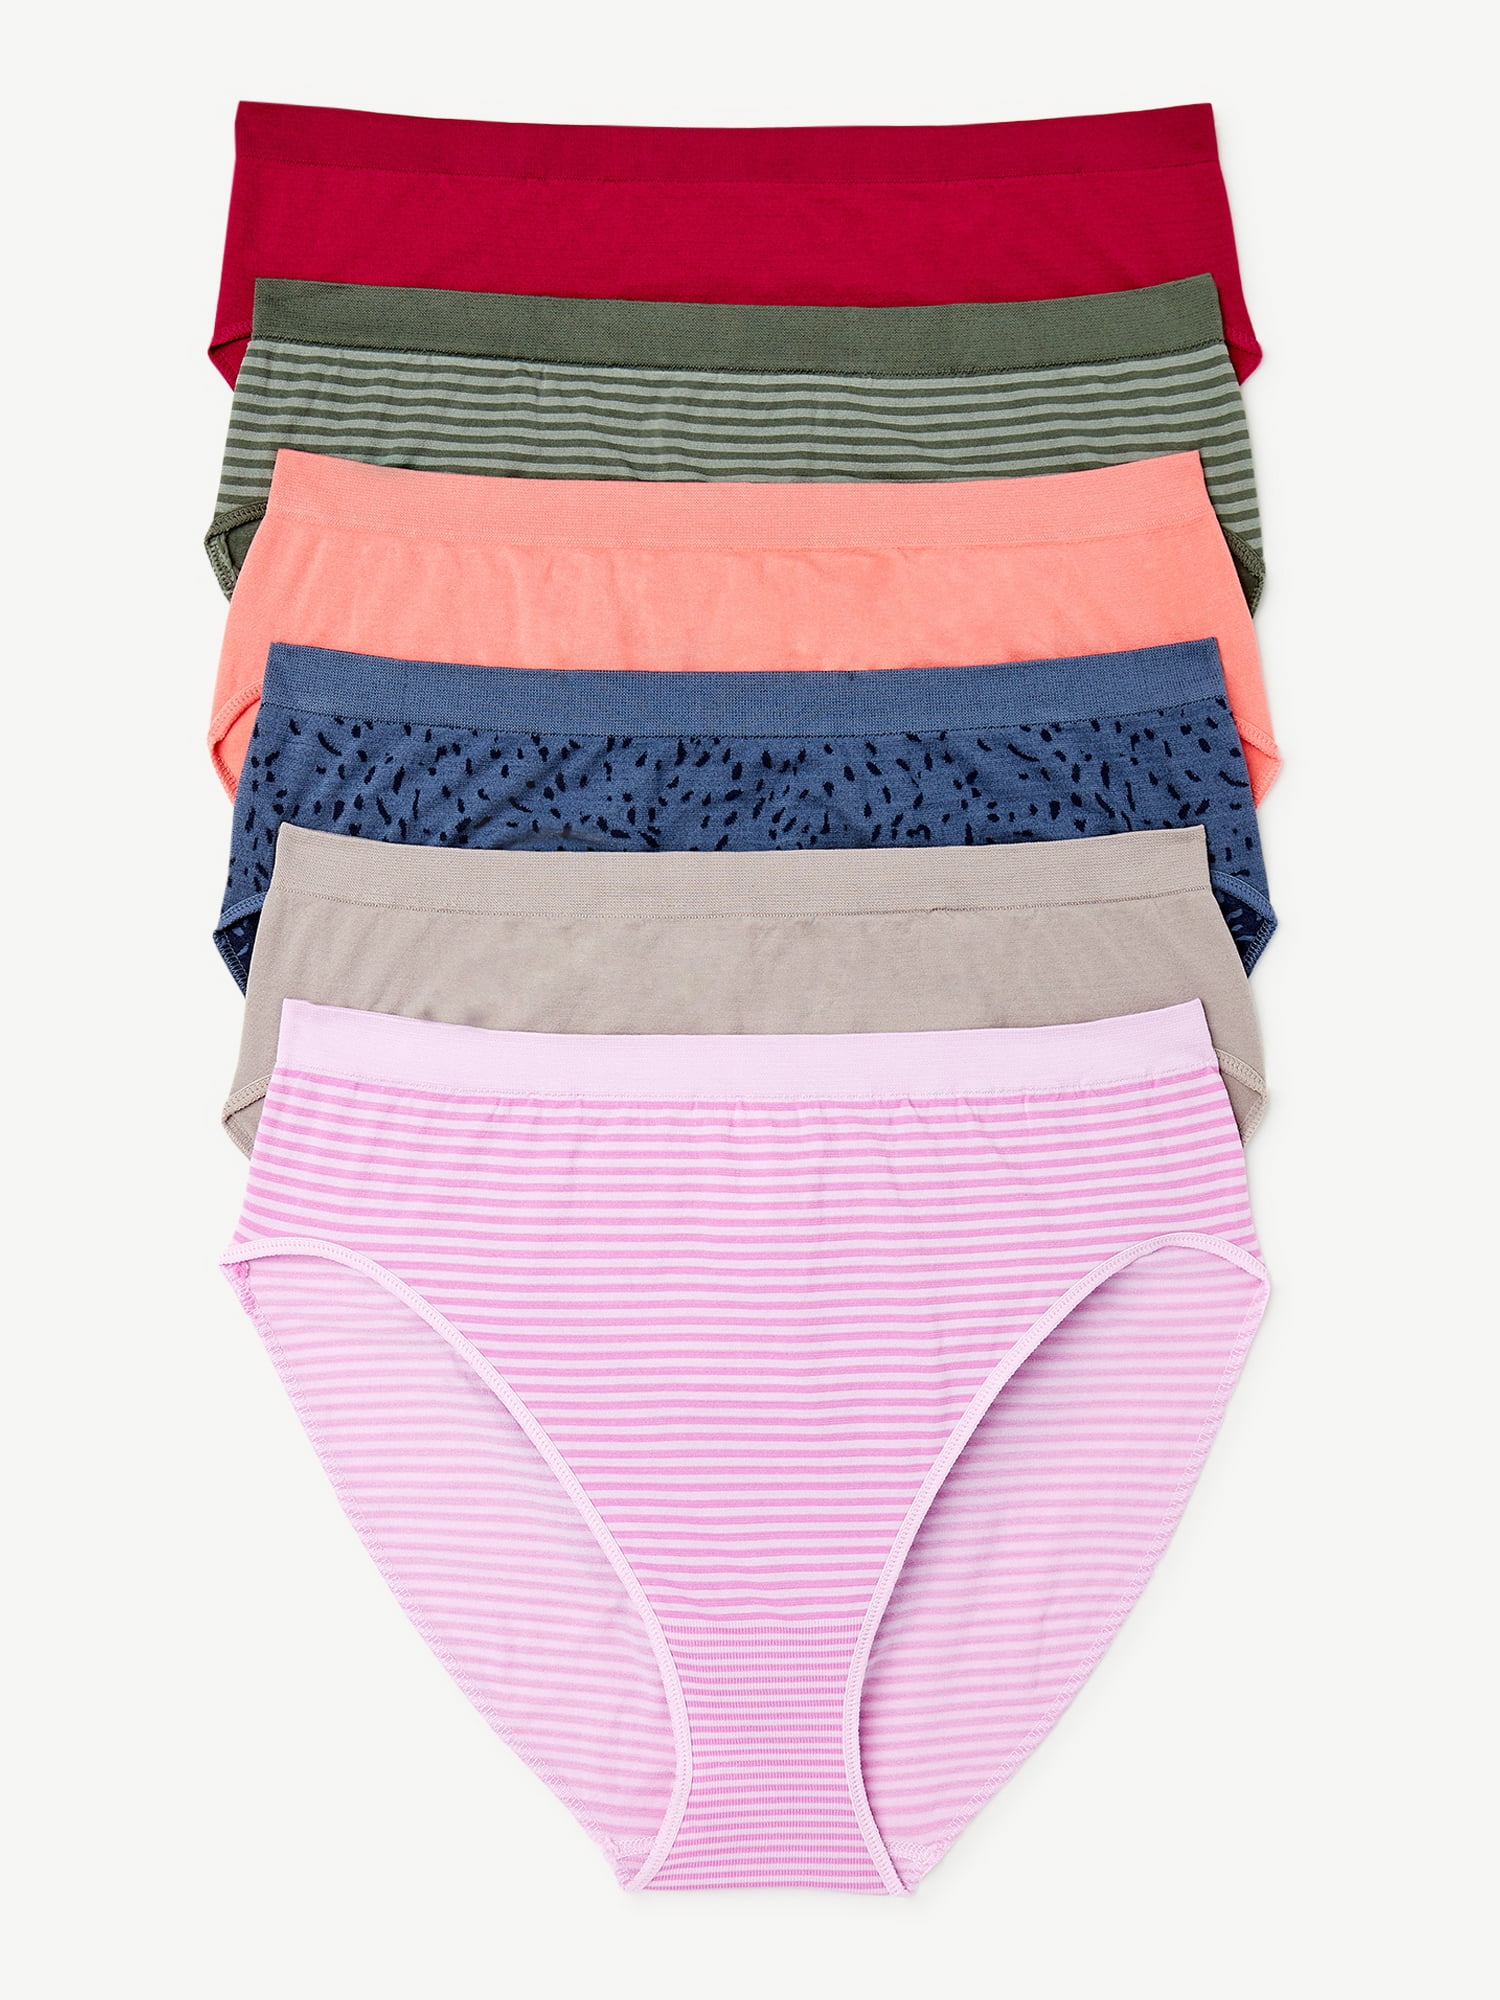 Joyspun Women's Seamless Hi Cut Panties, 6-Pack, Sizes XS to 3XL ...